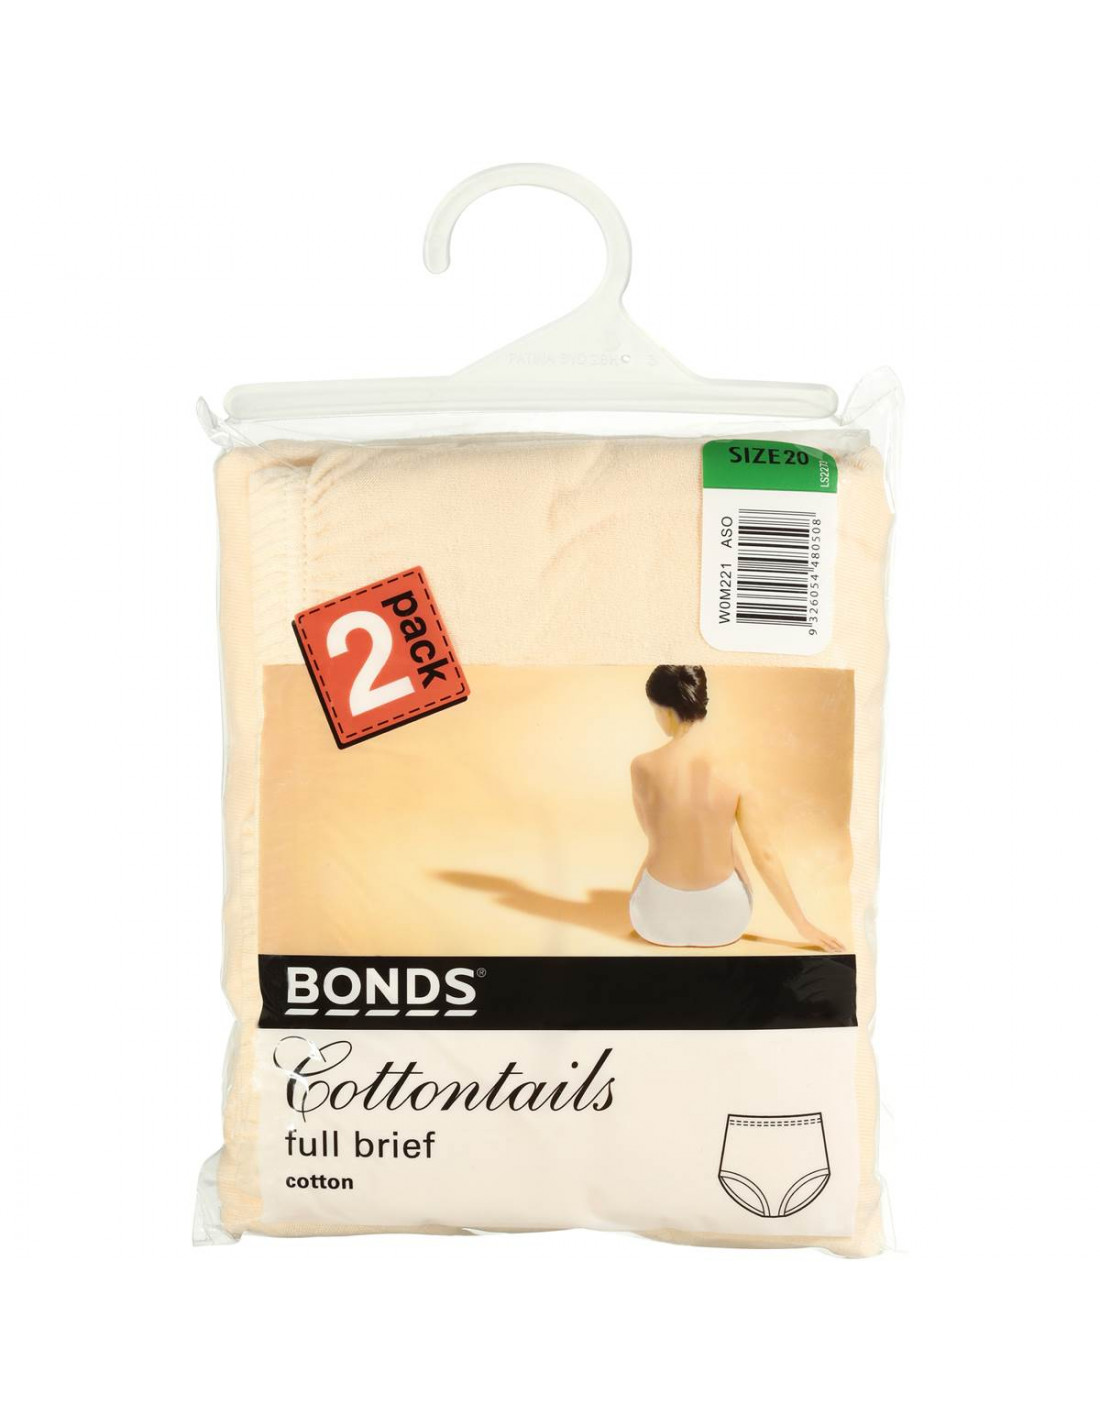 https://www.allysbasket.com/54005-thickbox_default/bonds-womens-underwear-cottontails-size-20-2-pack.jpg